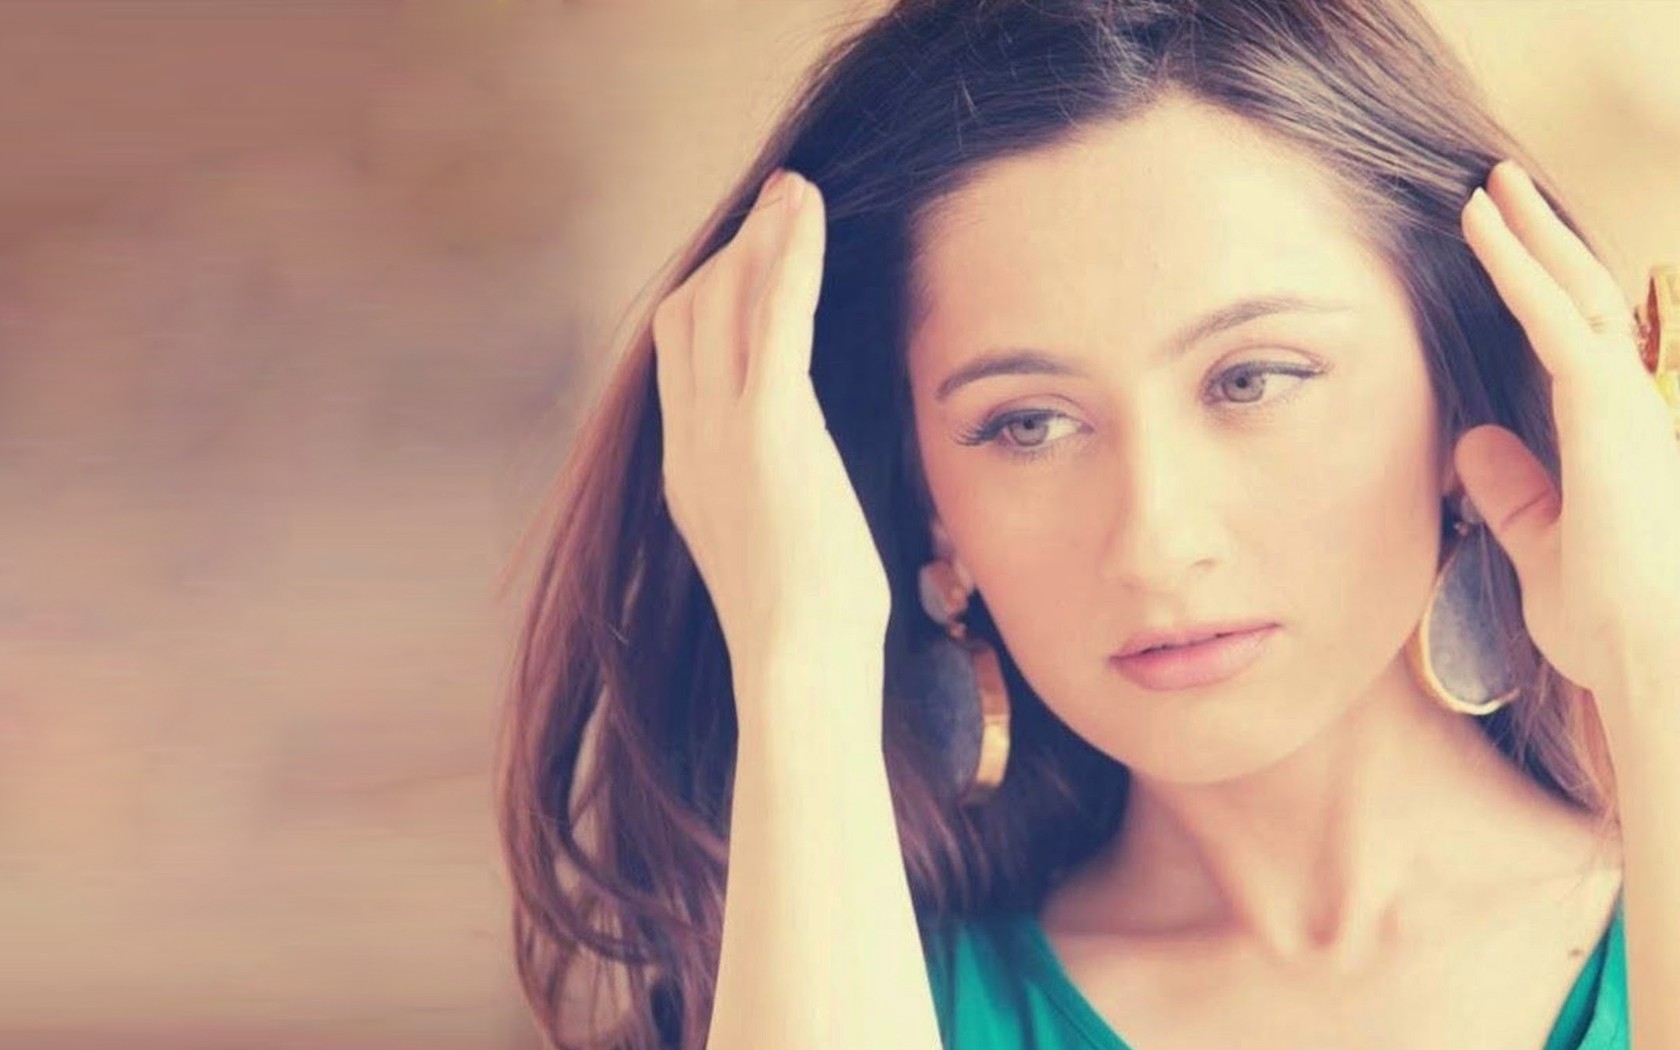 Top 10 Hot Beautiful Indian TV Actresses